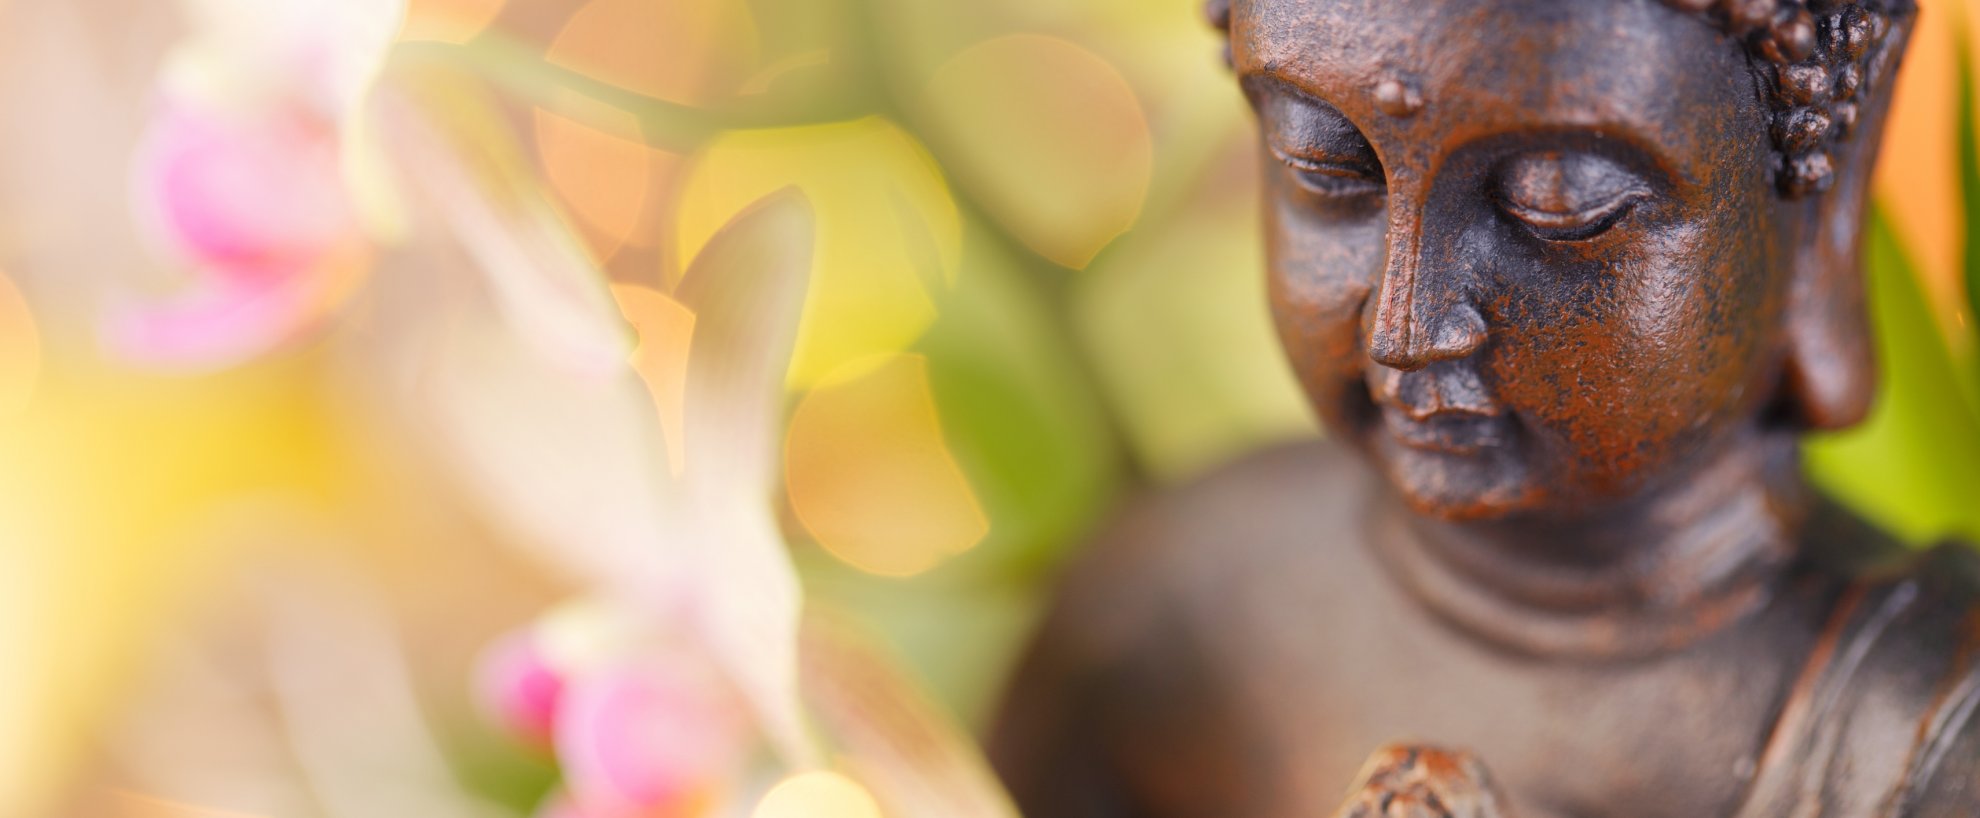 Urlaub Reise Reisen Buddha Buddhismus Meditation Spiritualität Buddhastatue